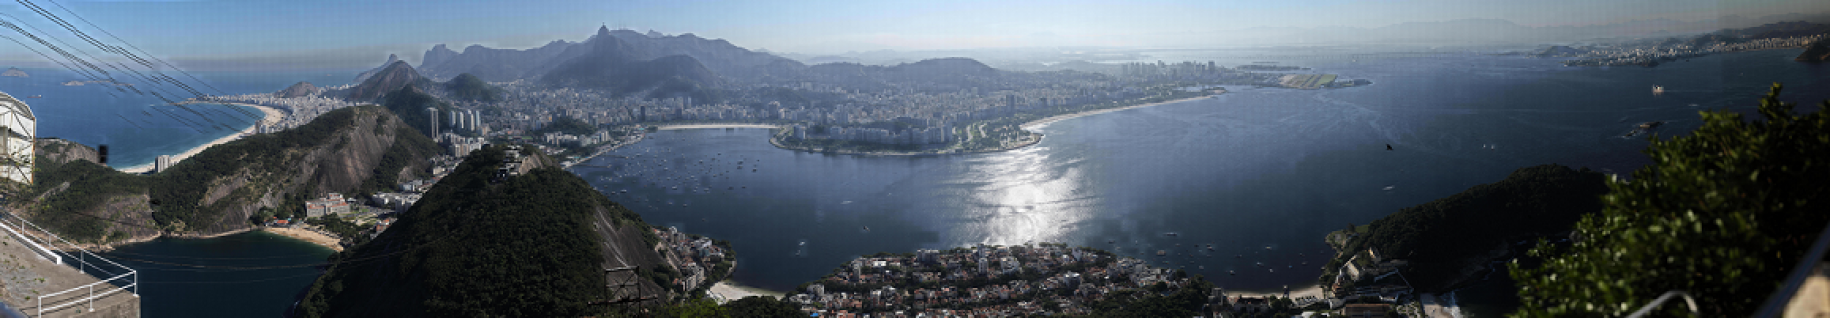 科 大 辛 达 德 教 授 所 摄 制 的 1,500 亿 像 素 照 片 ， 展 示 巴 西 里 约 热 内 卢 市 的 风 貌	